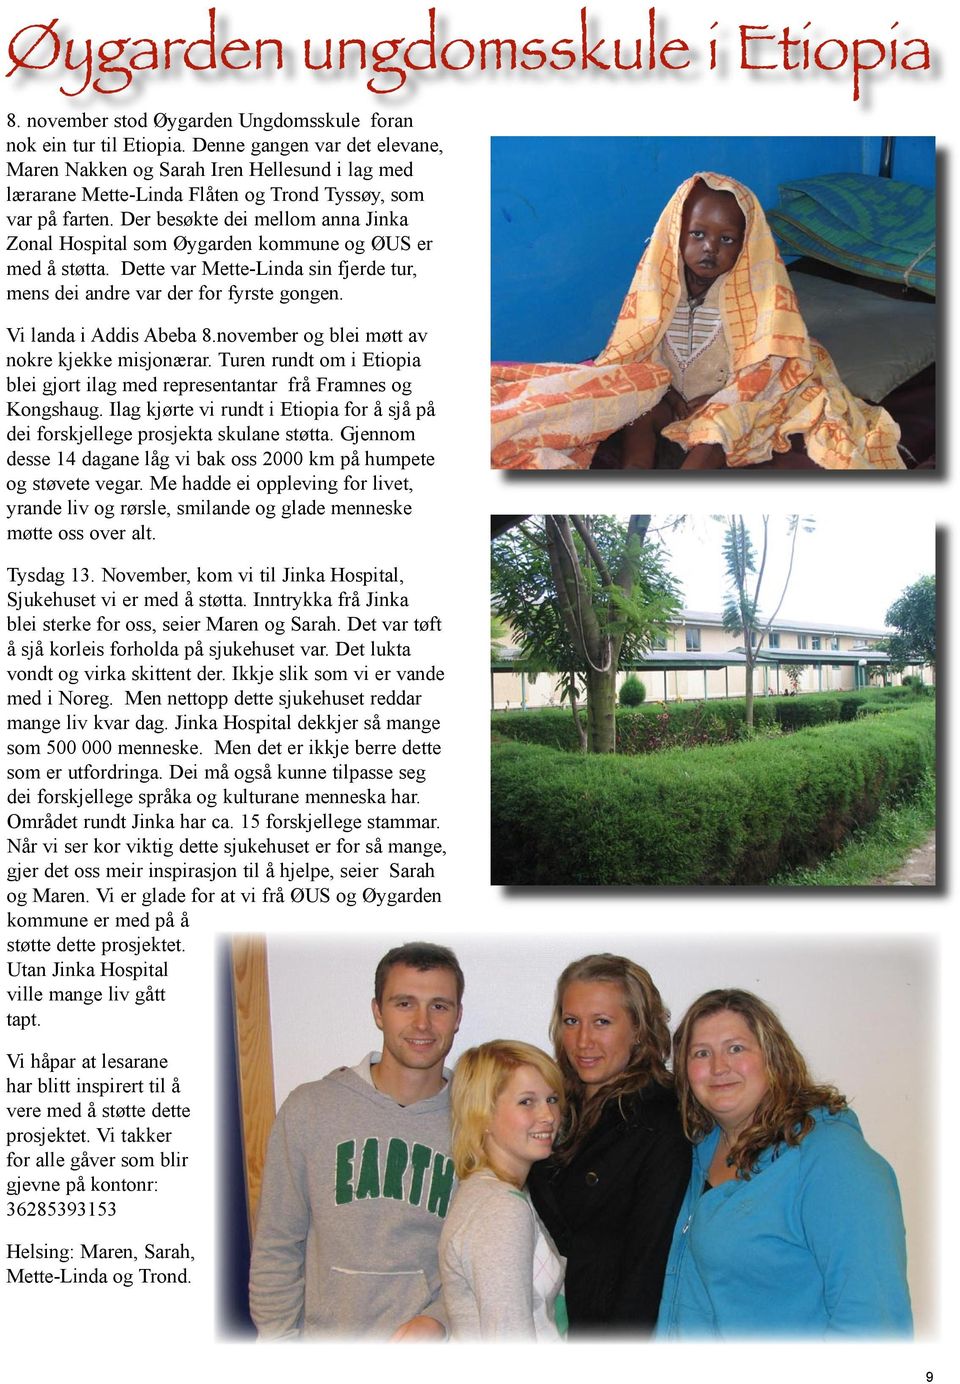 Der besøkte dei mellom anna Jinka Zonal Hospital som Øygarden kommune ØUS er med å støtta. Dette var Mette-Linda sin fjerde tur, mens dei andre var der for fyrste gongen. Vi landa i Addis Abeba 8.